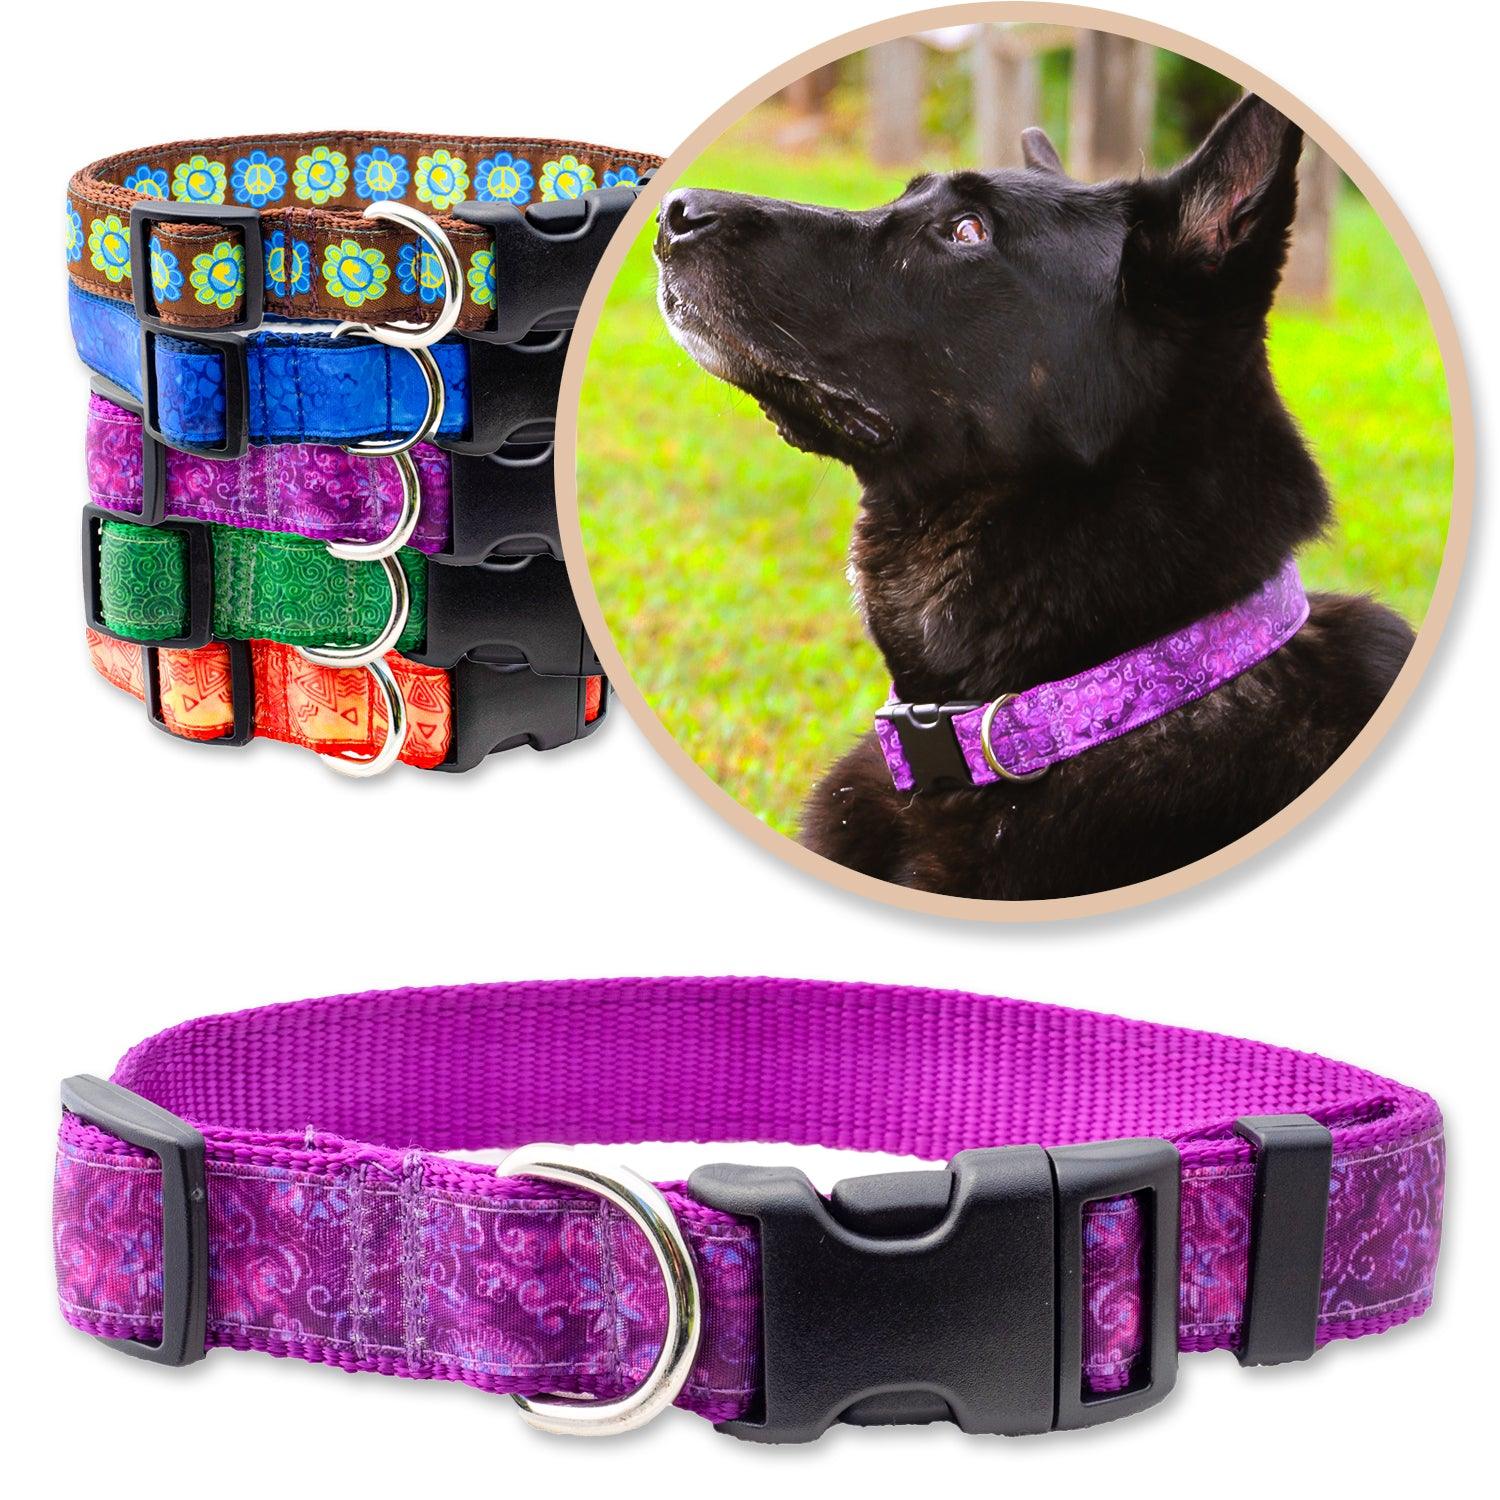 Purple batik inspired dog caller shown on a black dog